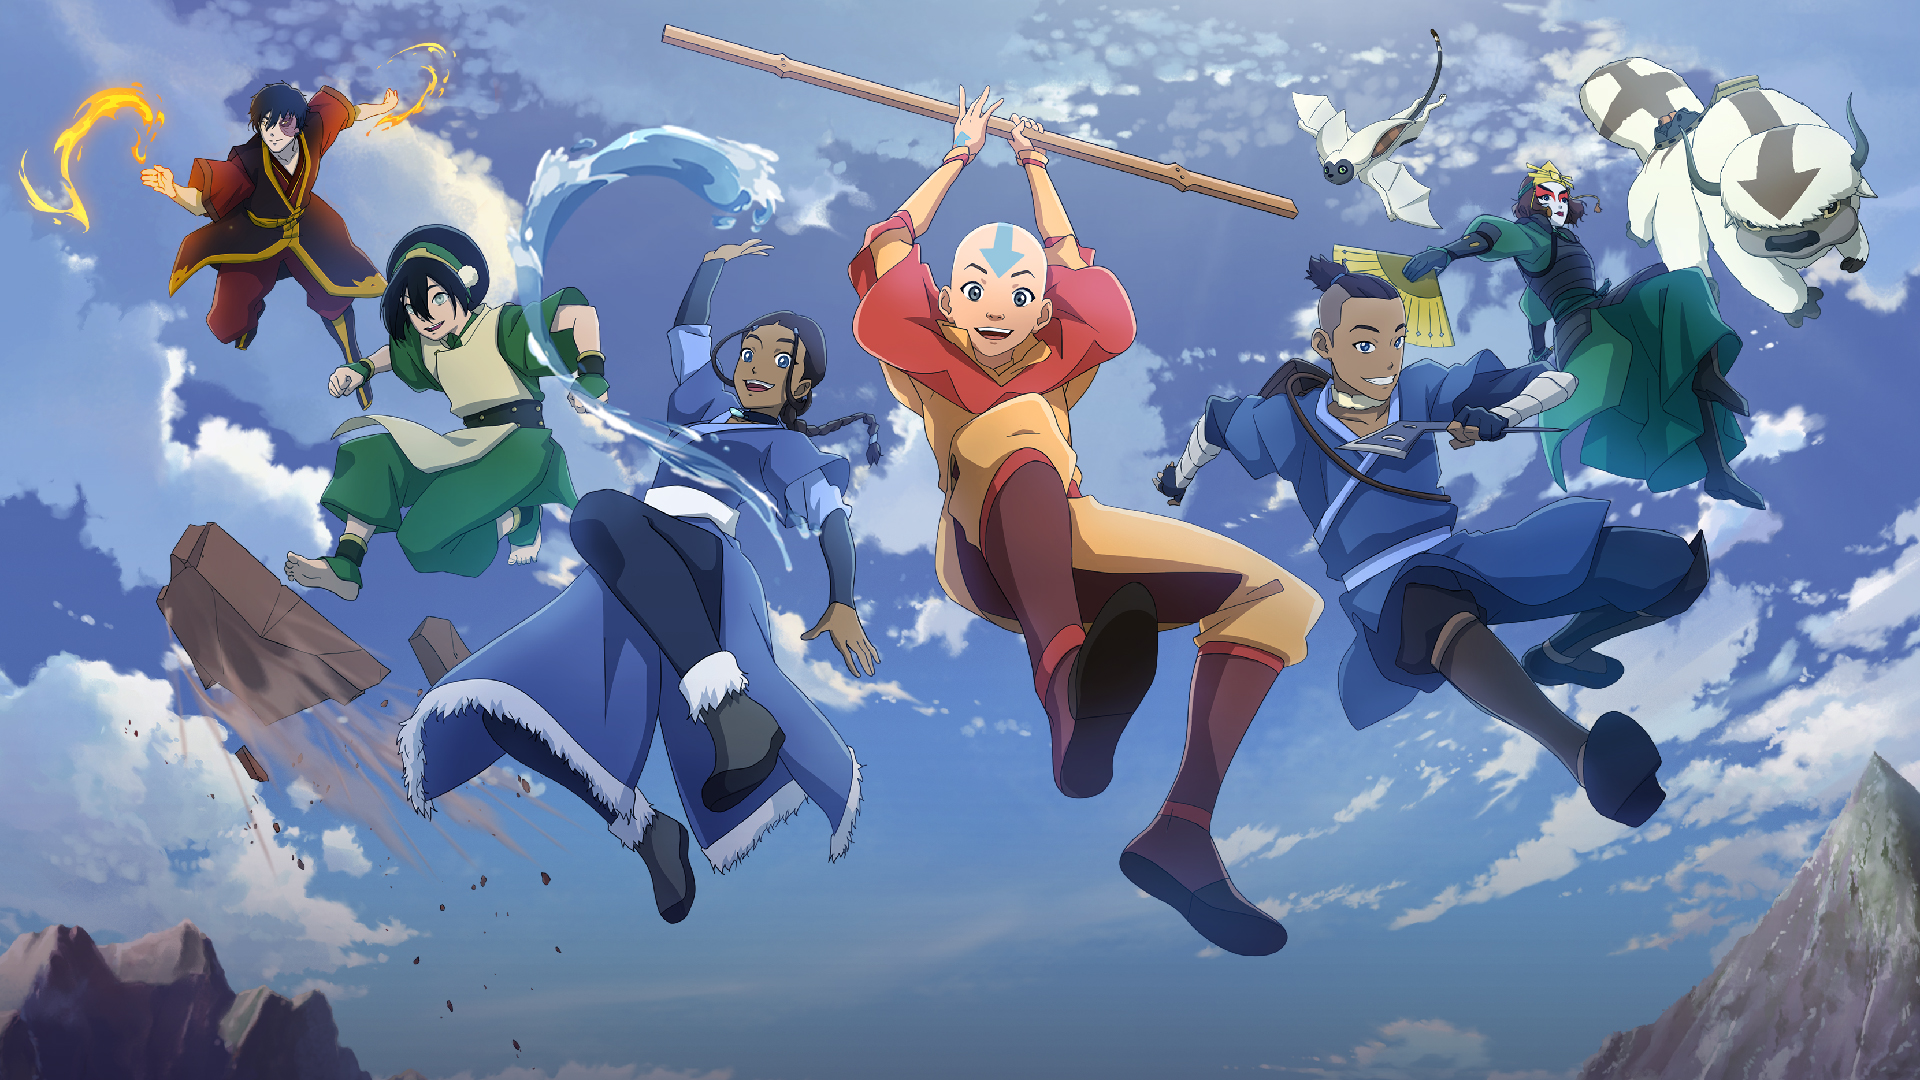 Avatar: The Last Airbender characters (Zuko, Toph, Katara, Aang, Katara, Suki, Appa, and Momo) smile while mid-jump